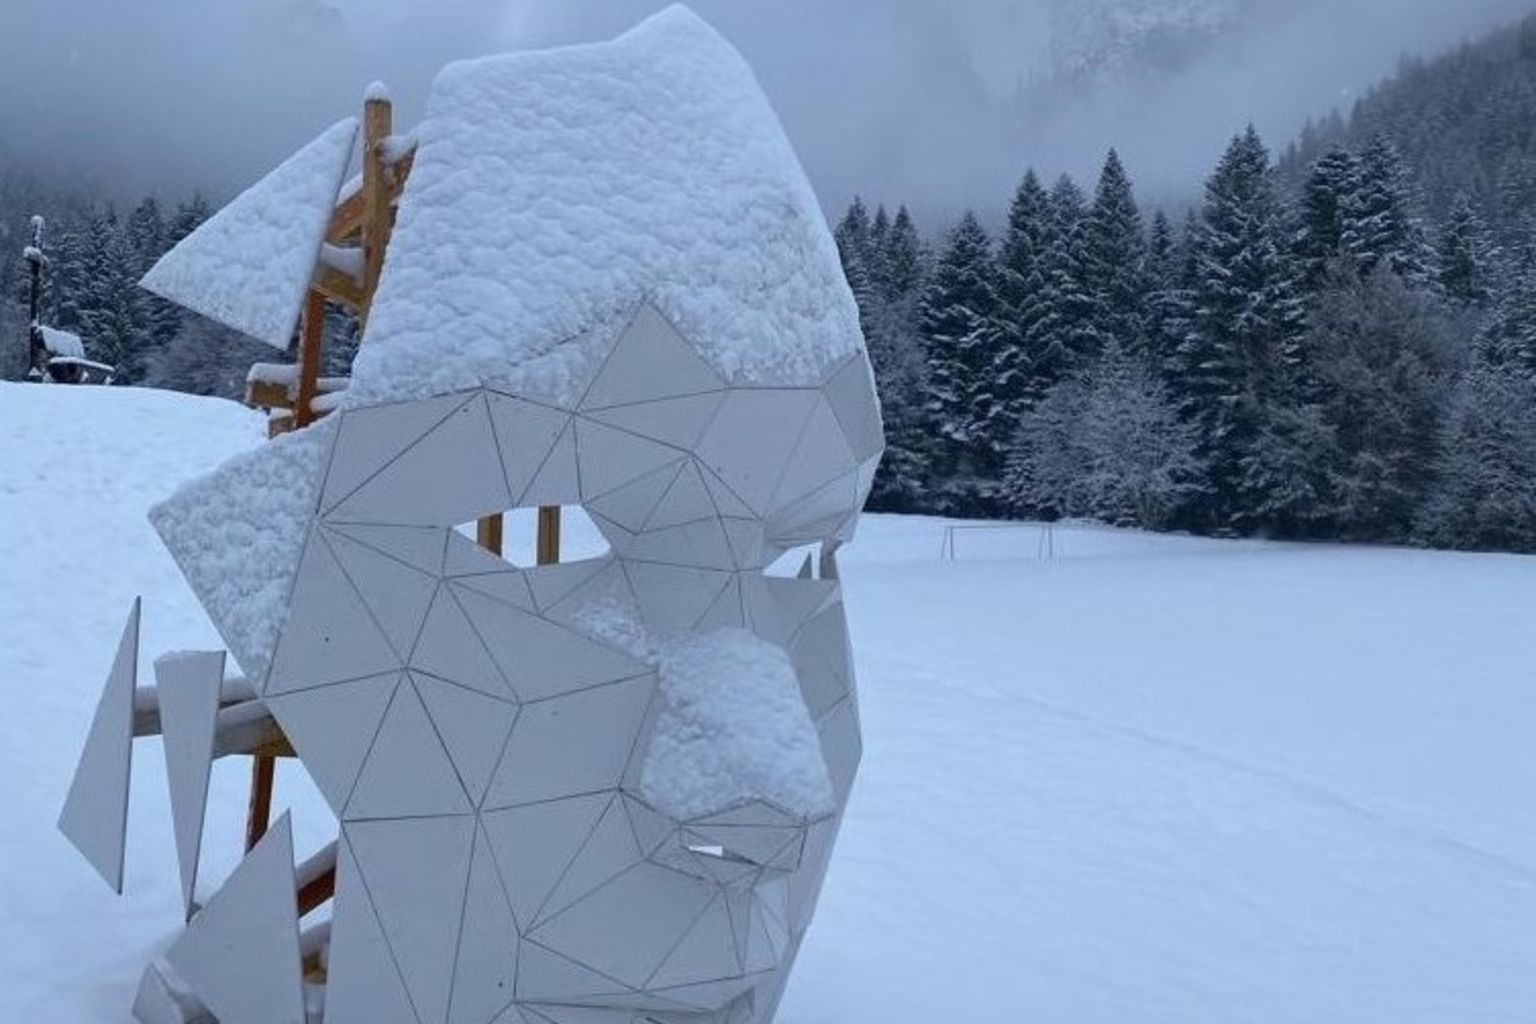 Skulptur Torgon im Schnee, Wallis, Schweiz